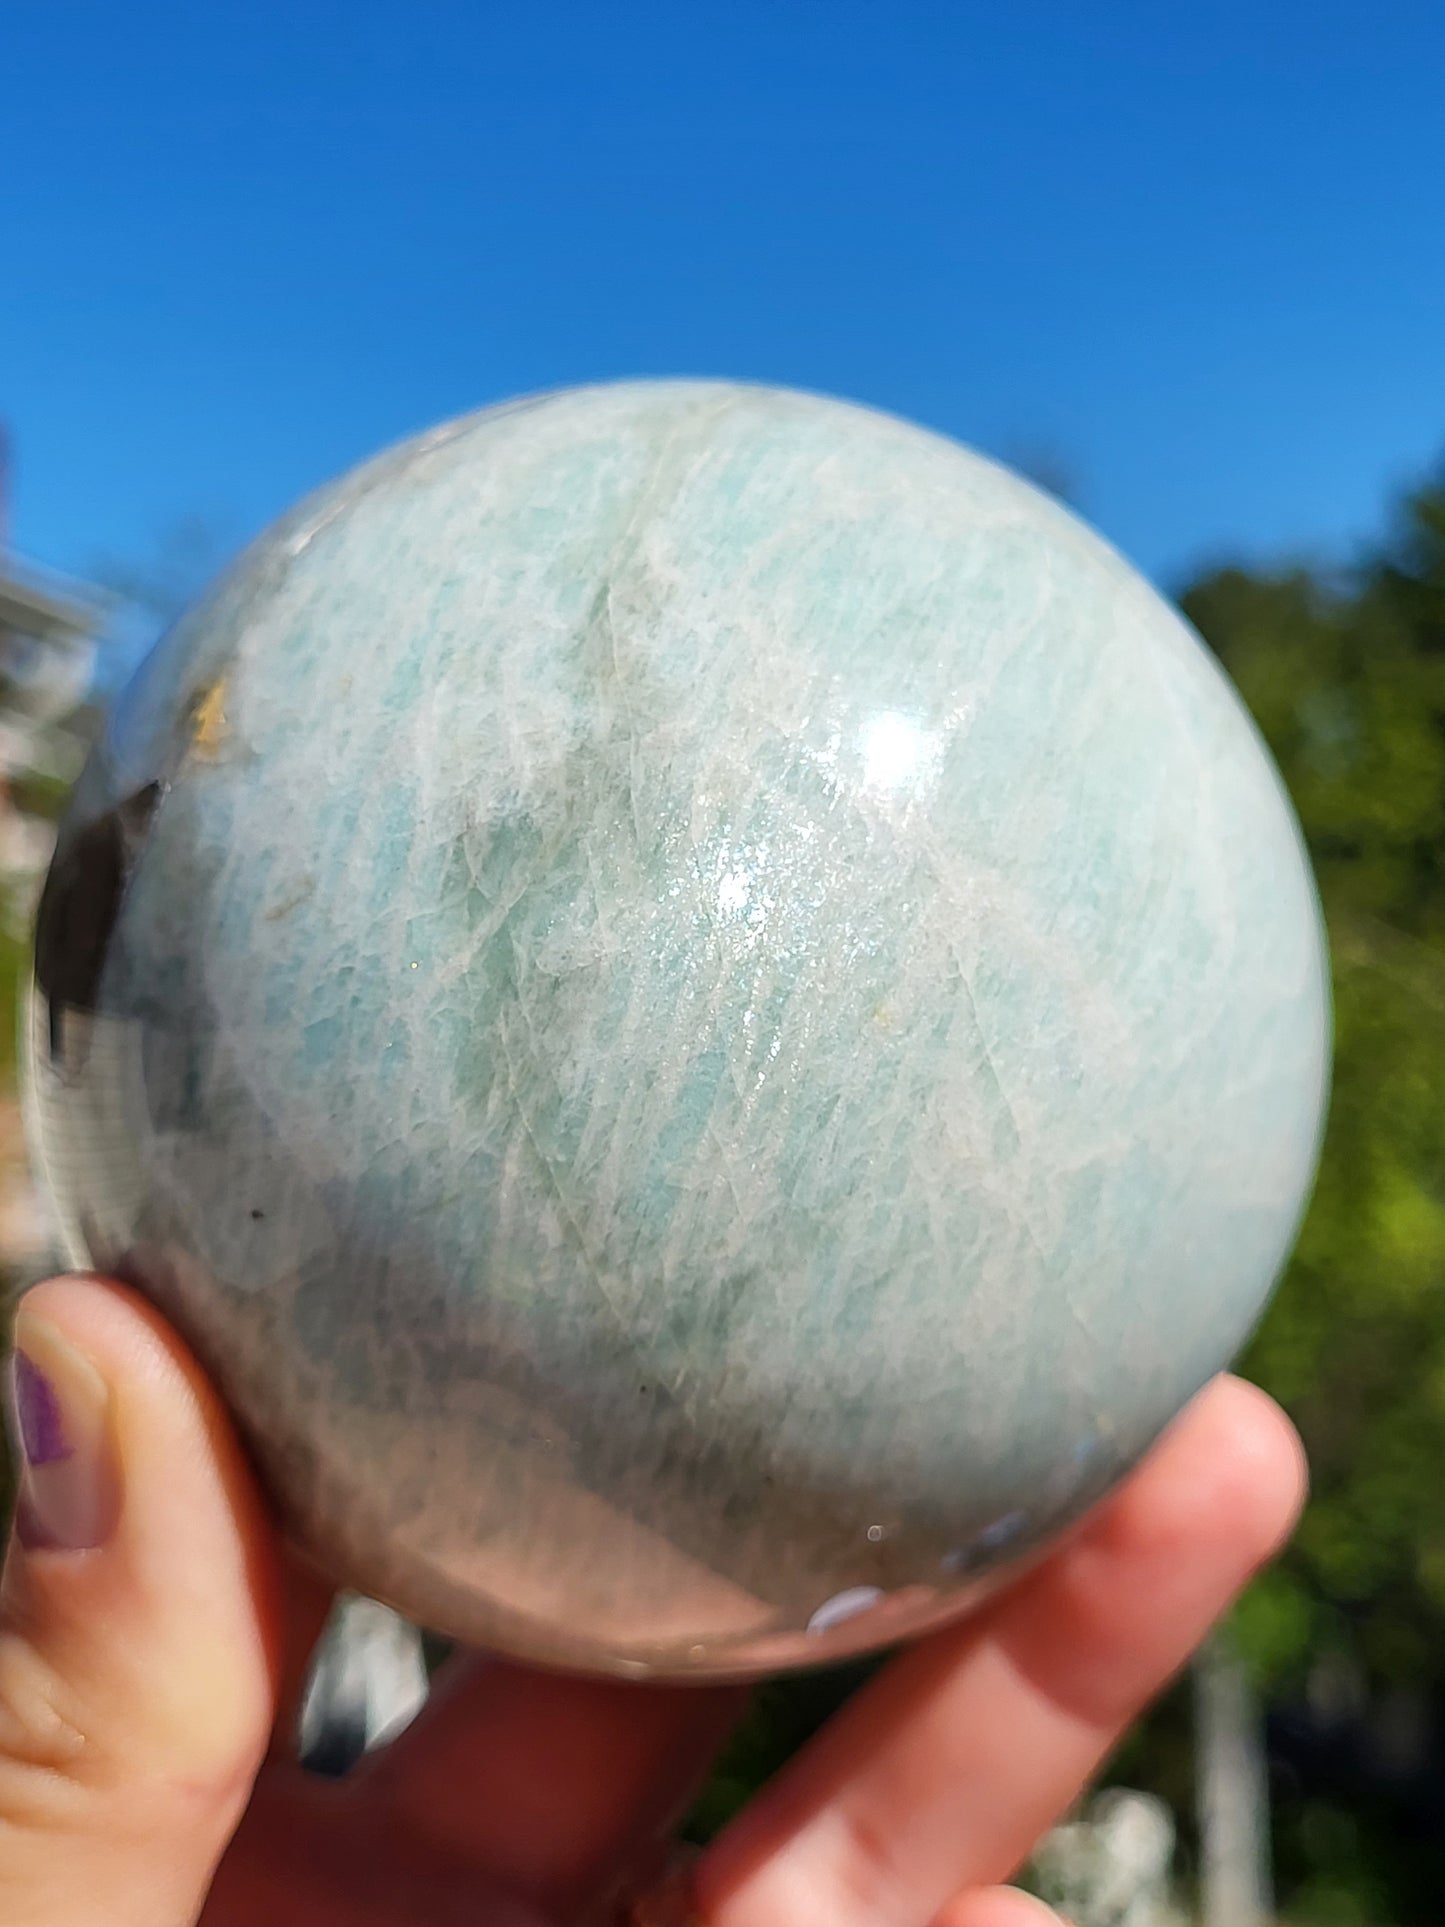 Amazonite Sphere with Smoky Quartz Inclusions